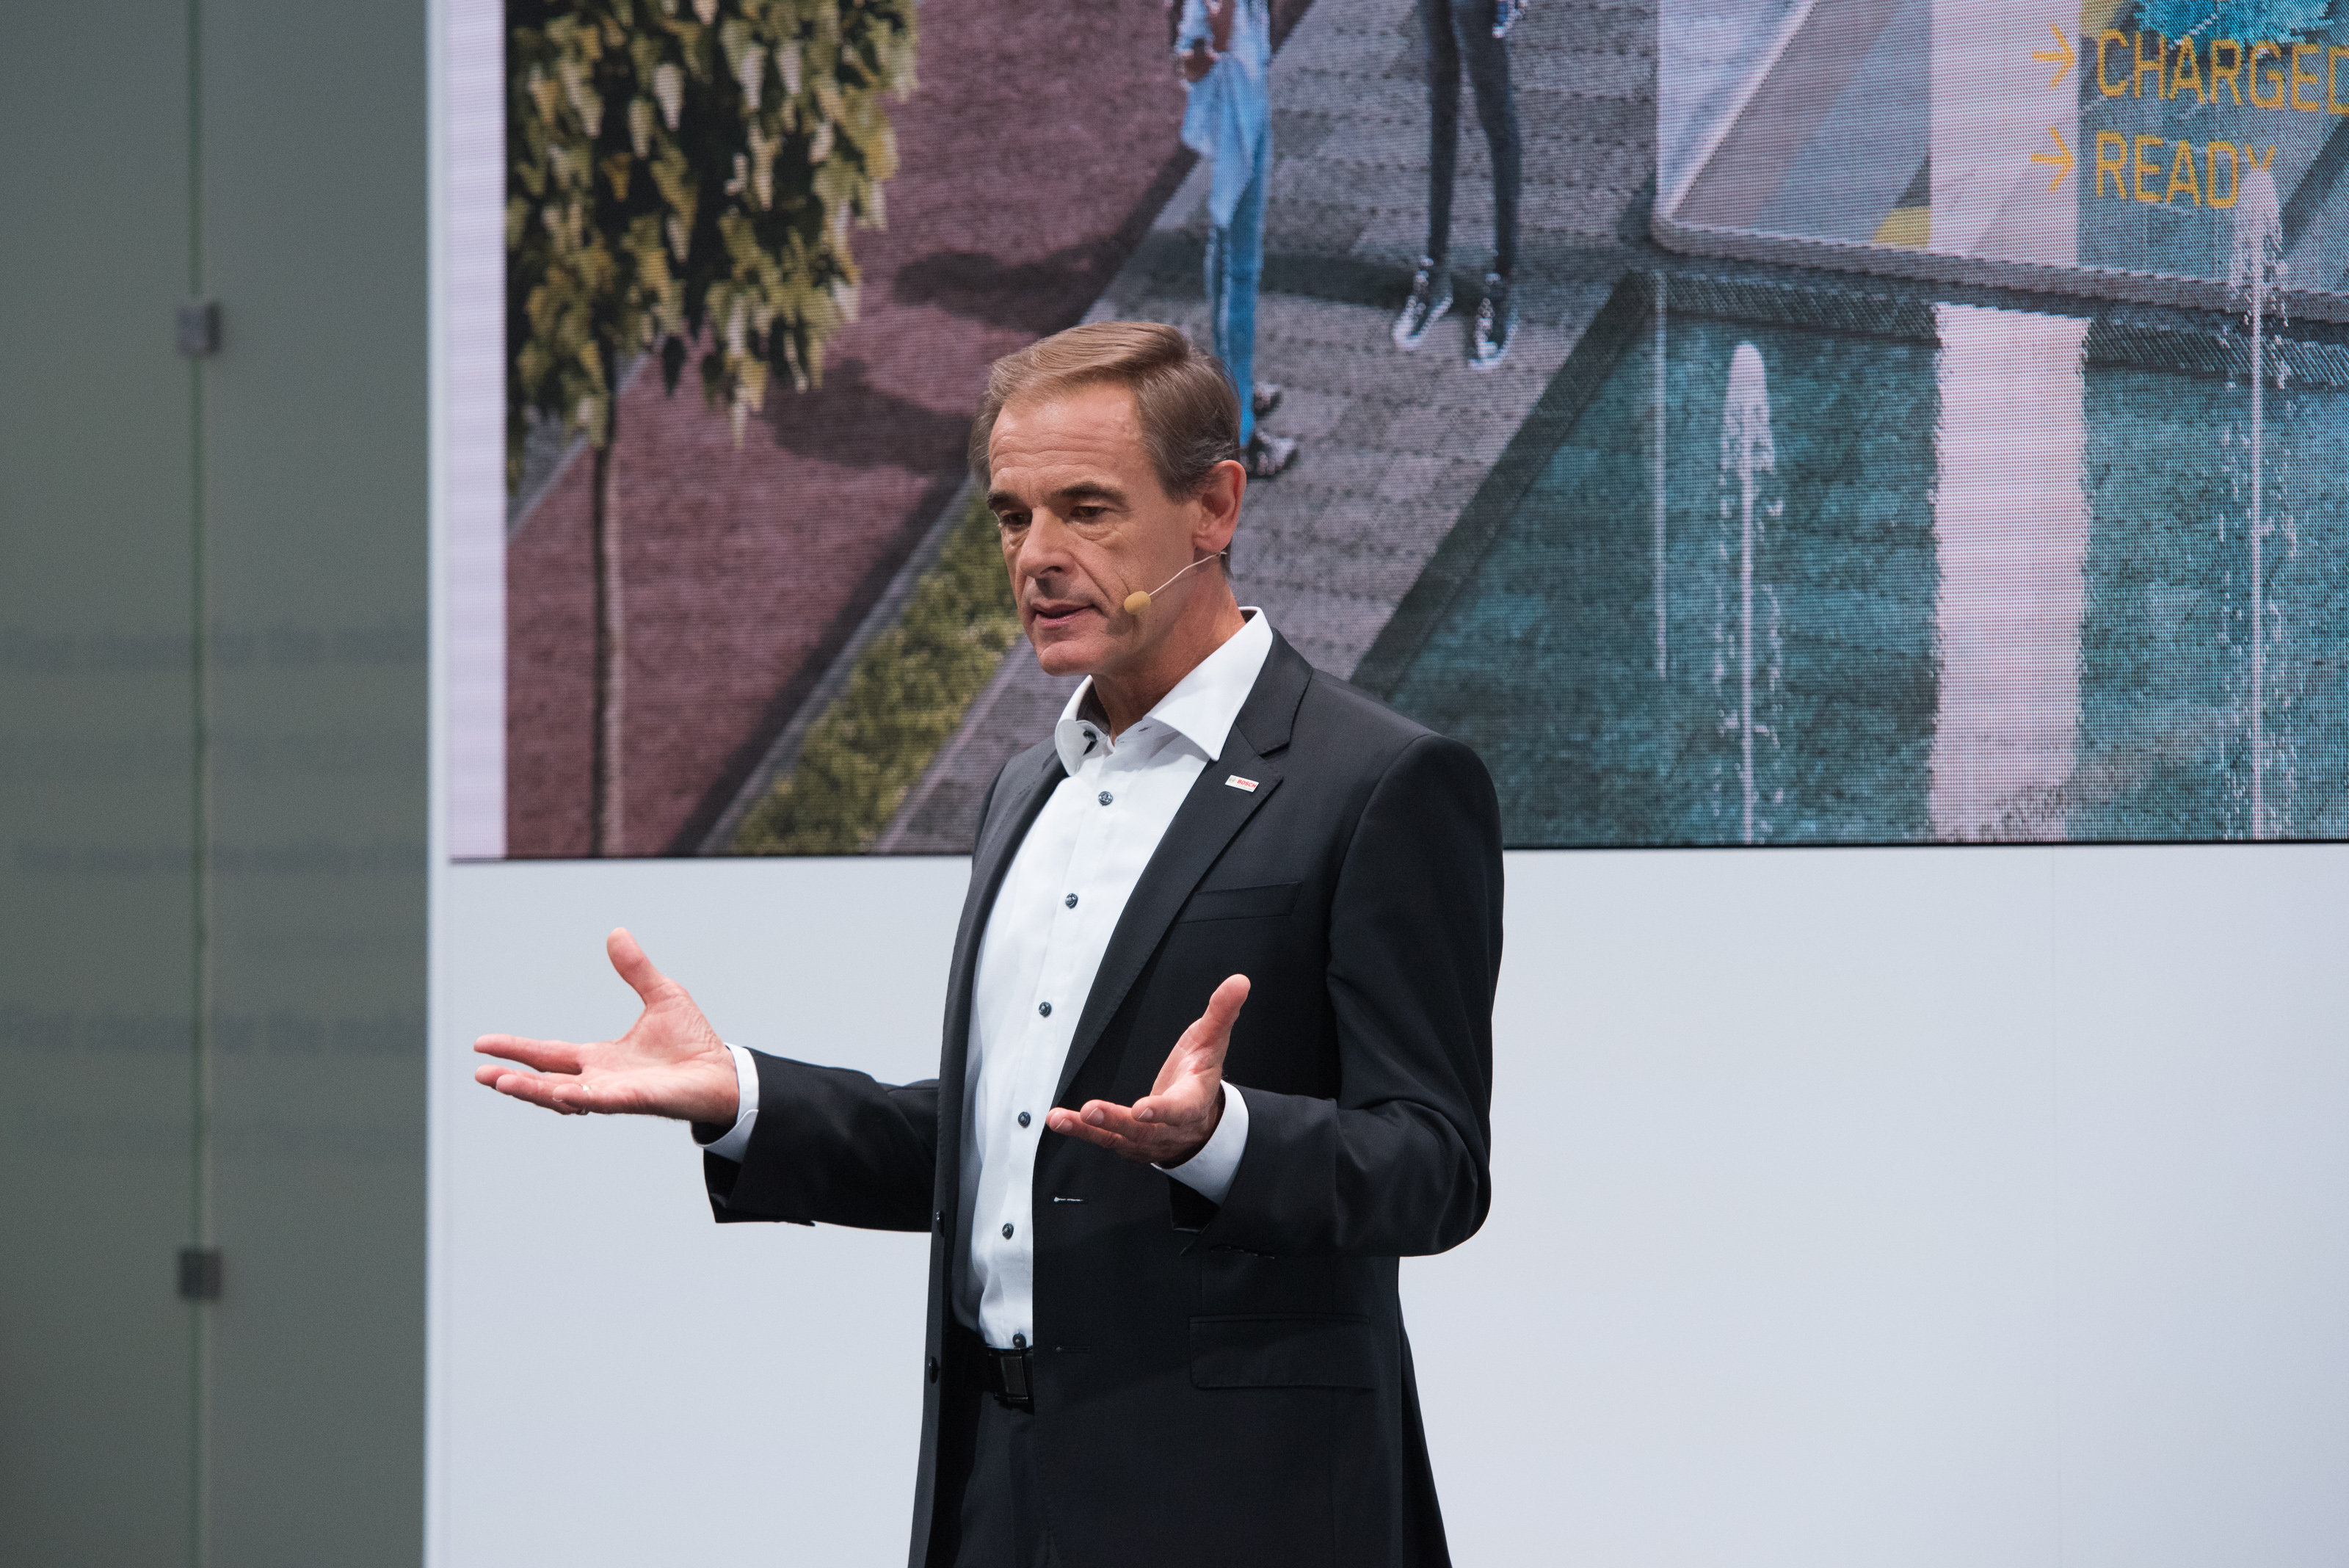 Bosch at IAA 2017